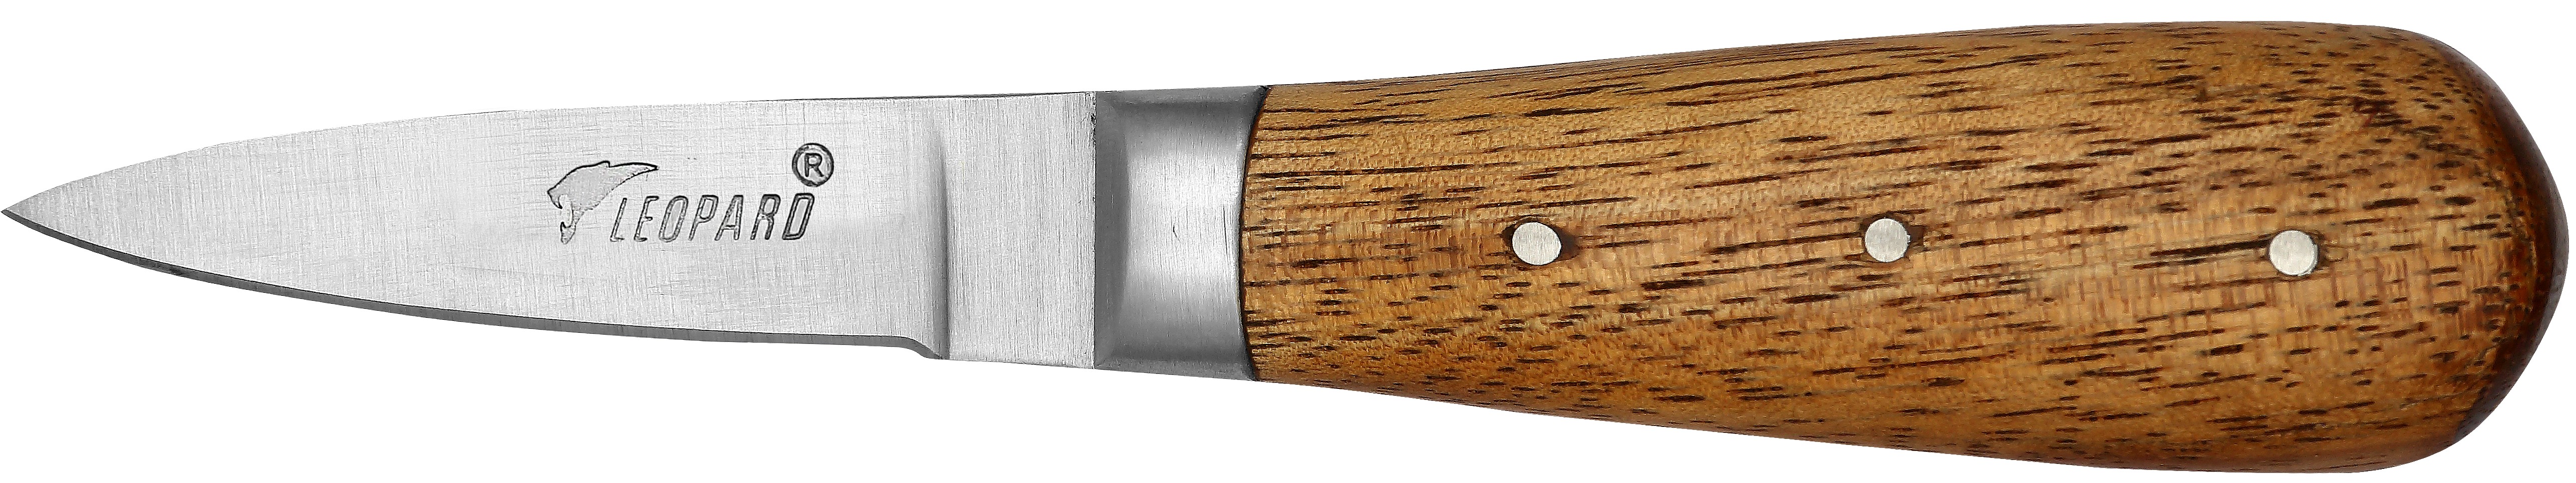 PE - Couteau lancette à huitre traditionnel 16 cm - bois marron